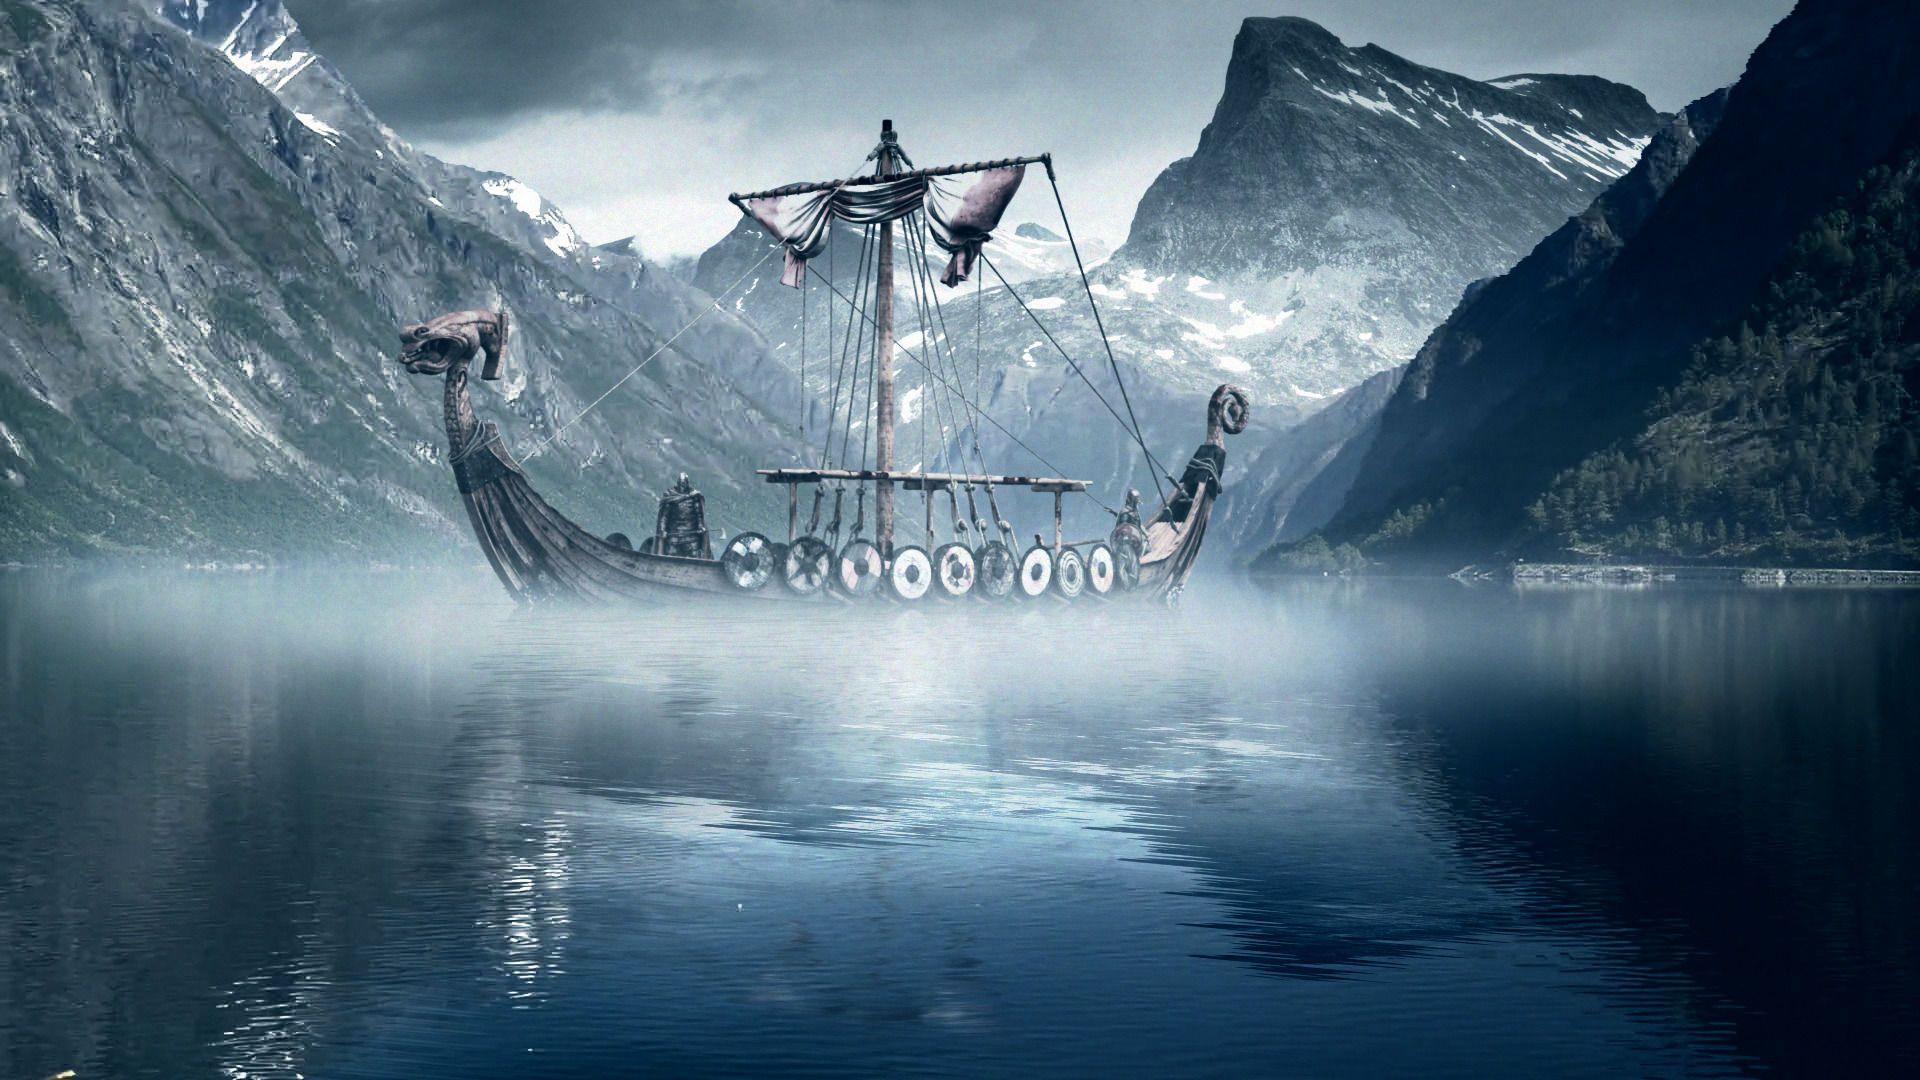 Viking Wallpaper Image for PC & Mac, Tablet, Laptop